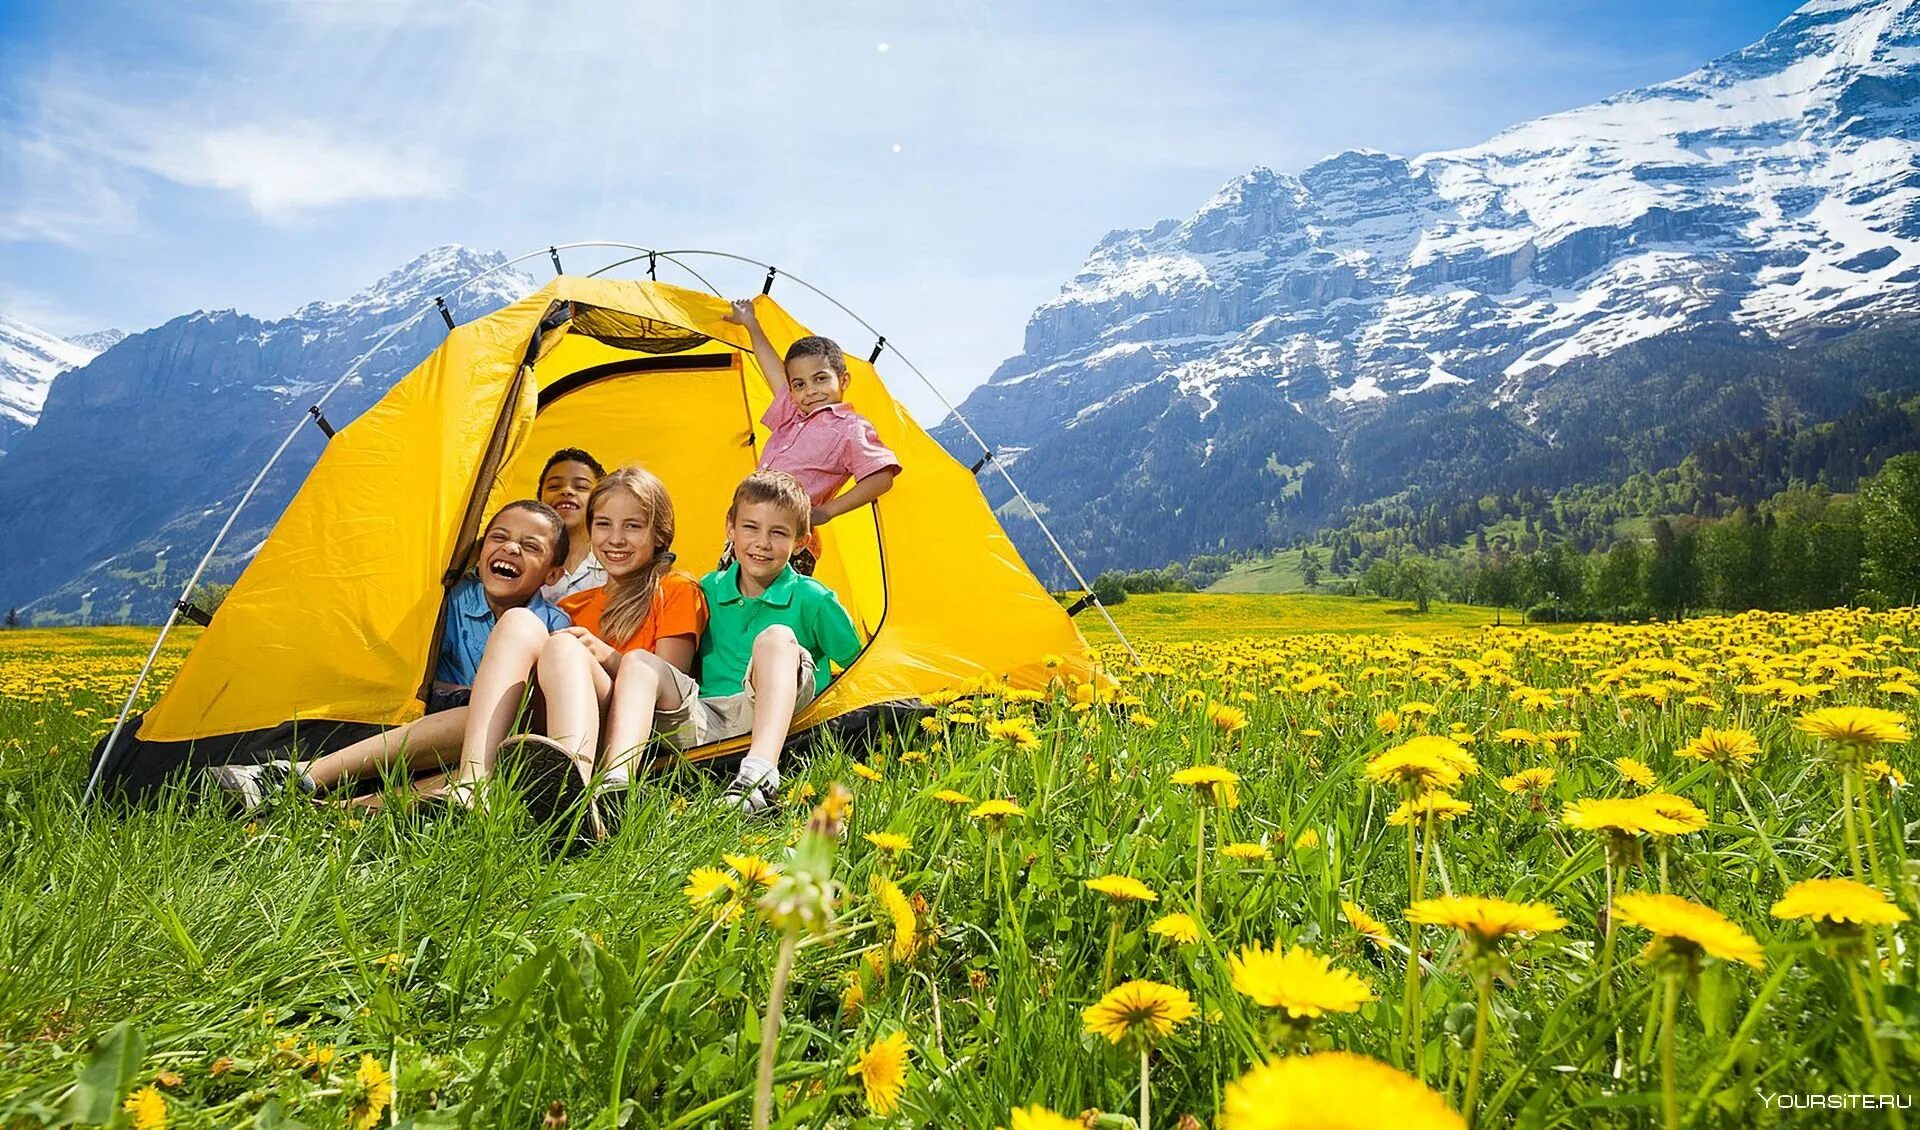 Развлечения в походе. Палатка на природе. Поход с детьми на природу. Поход семьей на природу. Семья на природе с палаткой.